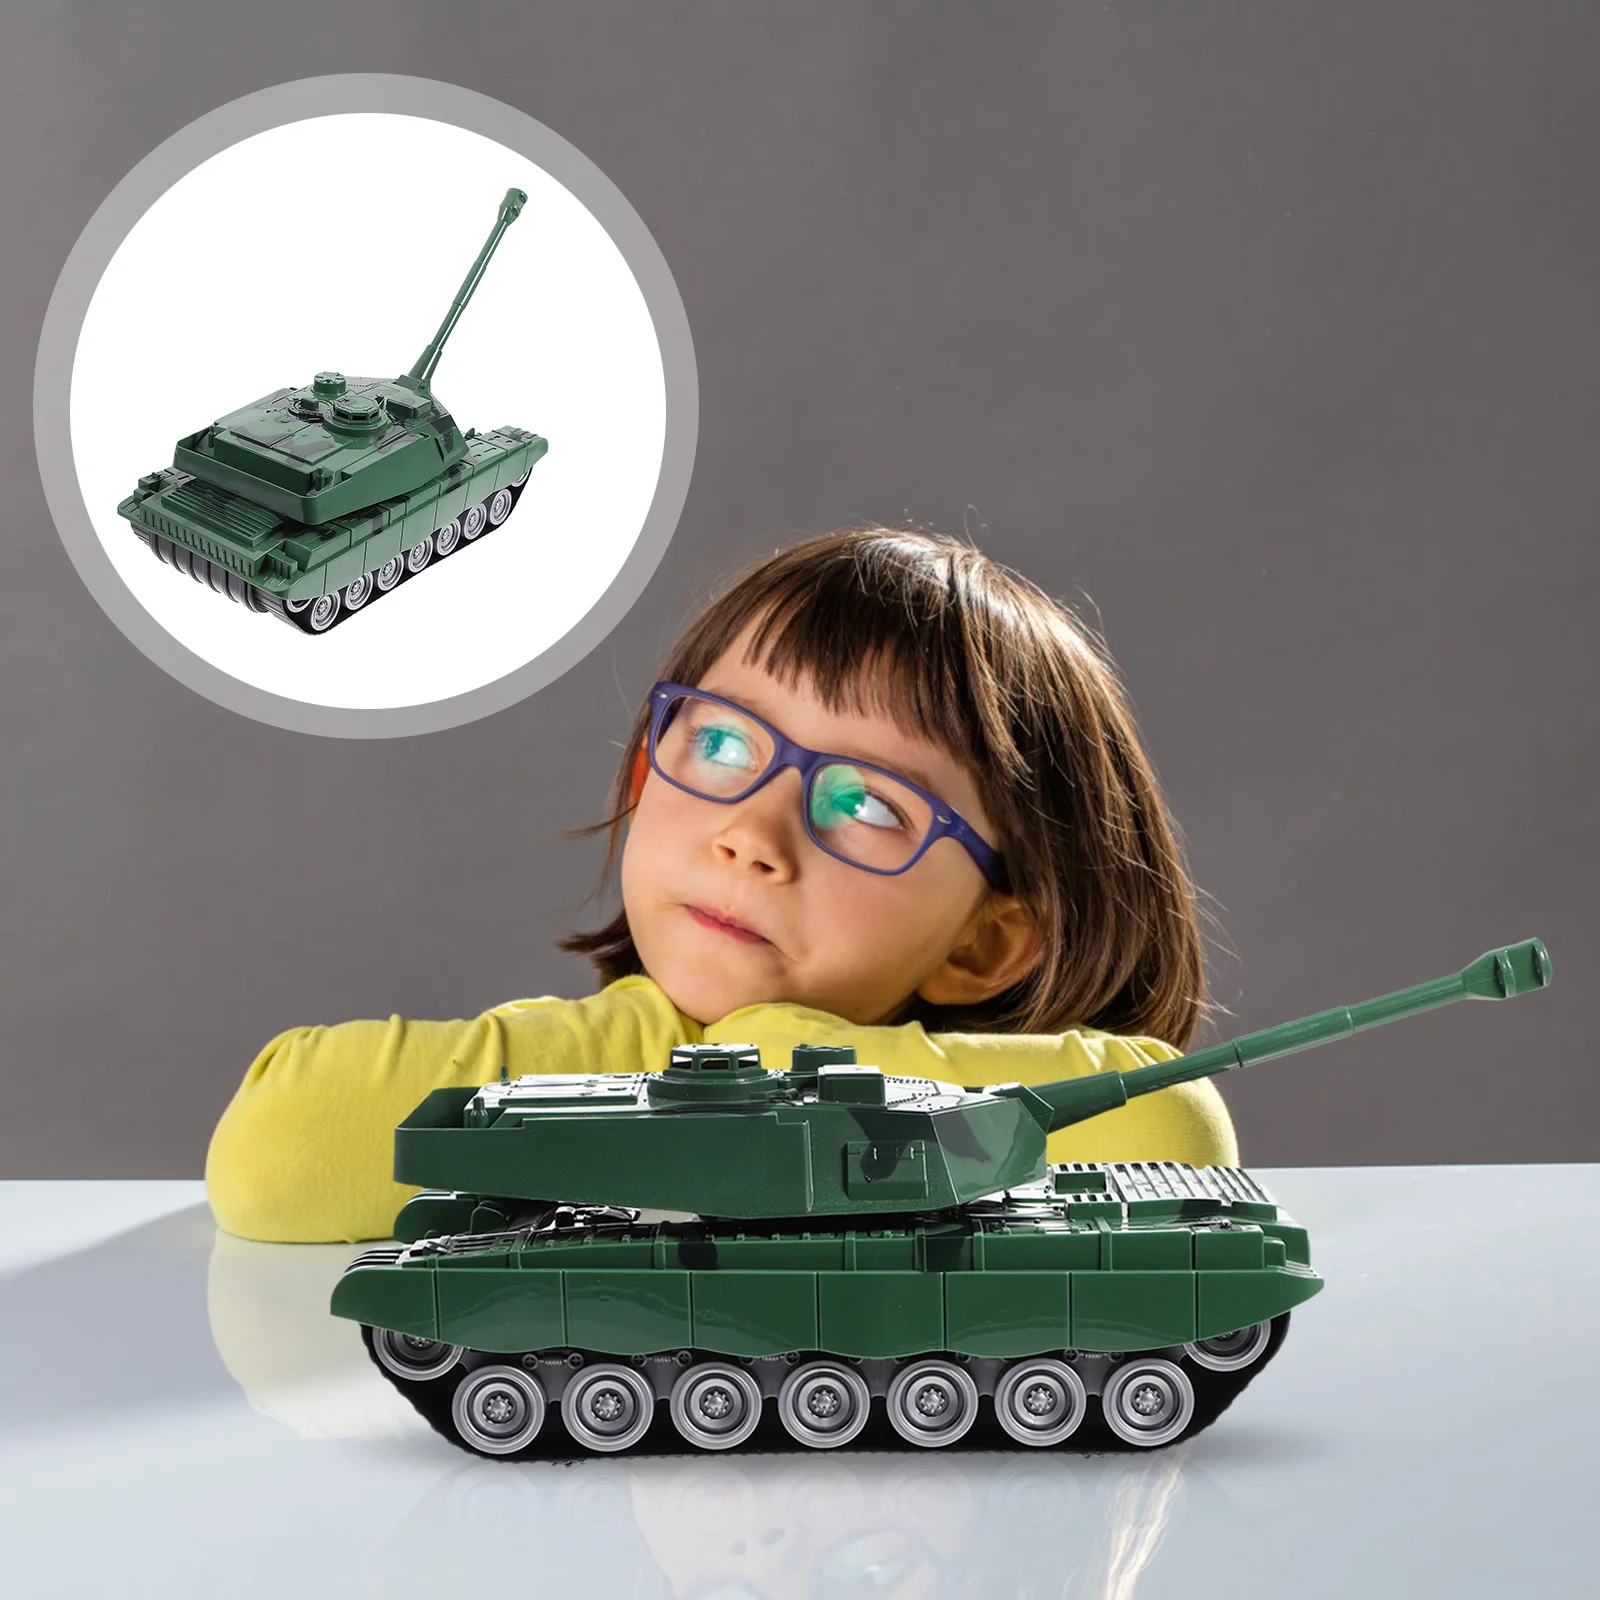 

Внедорожный Танк пластиковые модели автомобилей подарки взрослые военные сцены миниатюрные игрушки Вращающаяся башня для детей